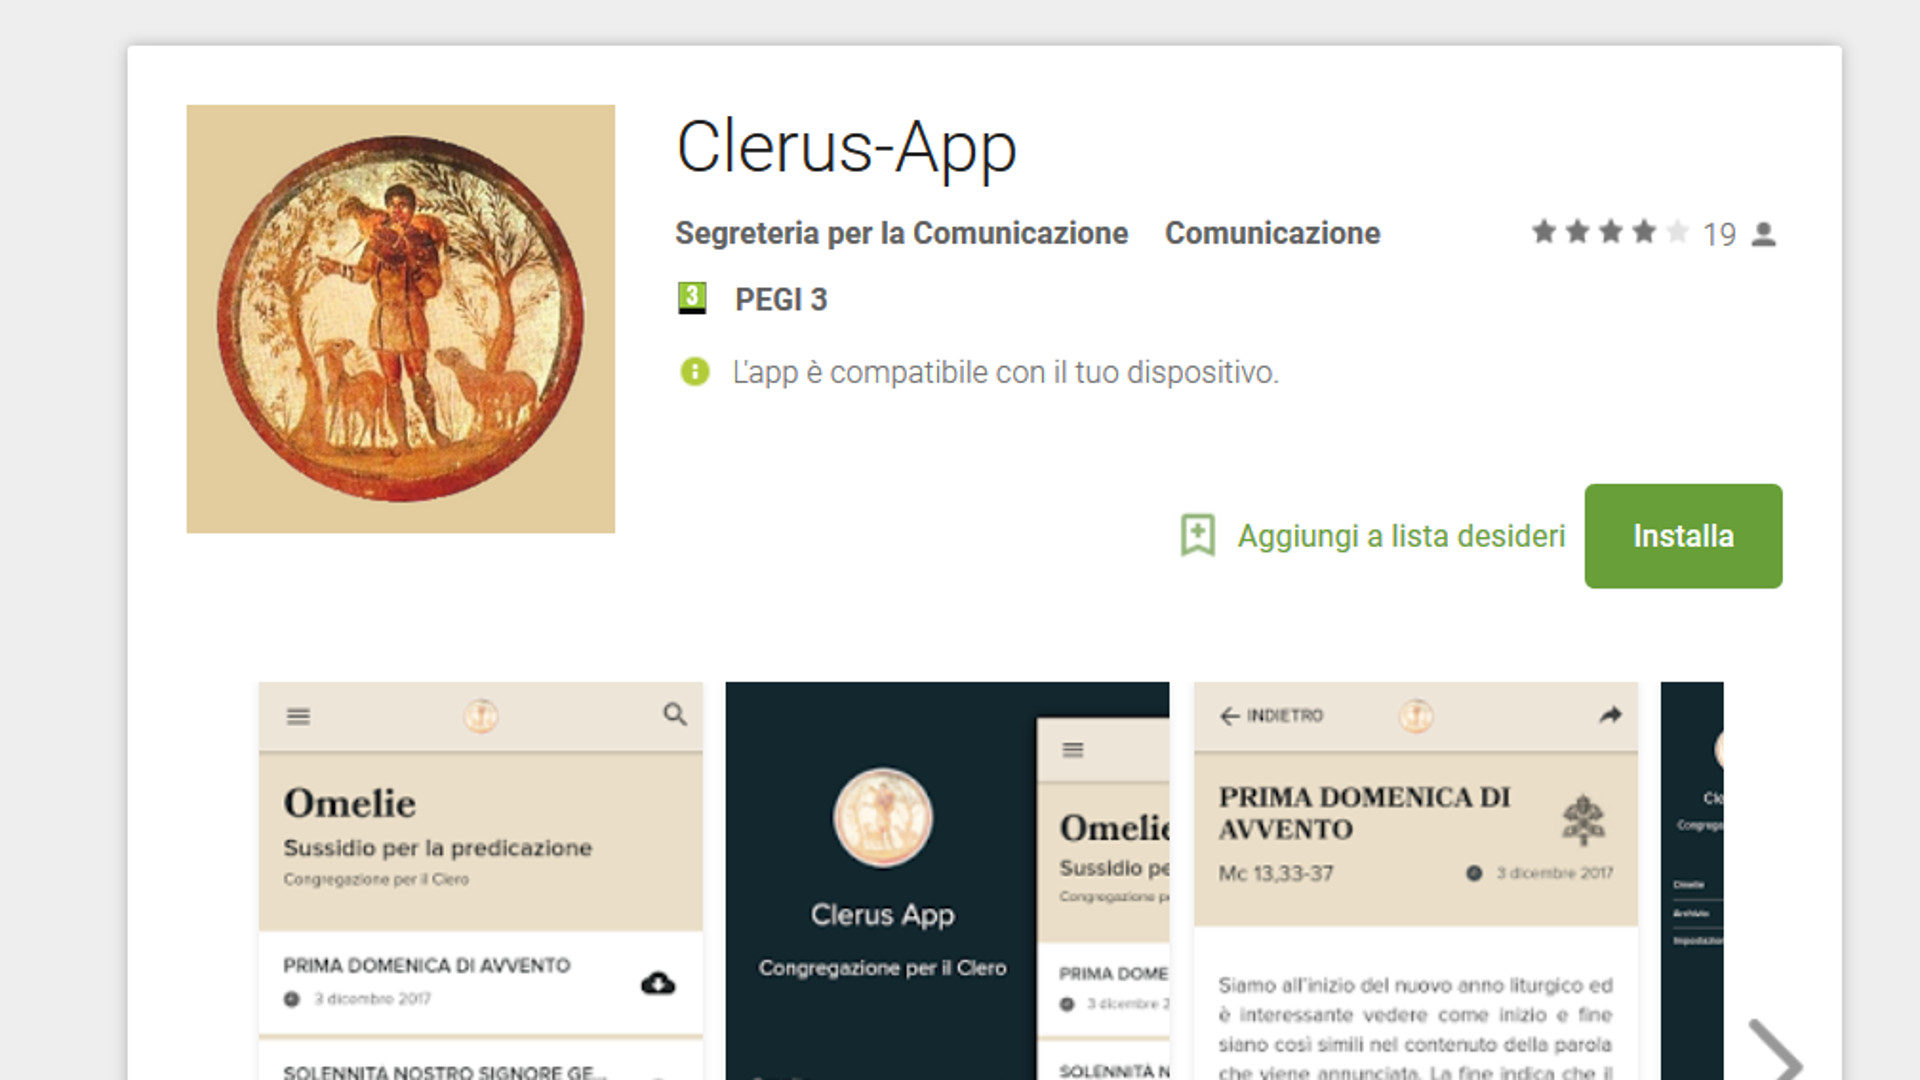 Die neue Clerus-App